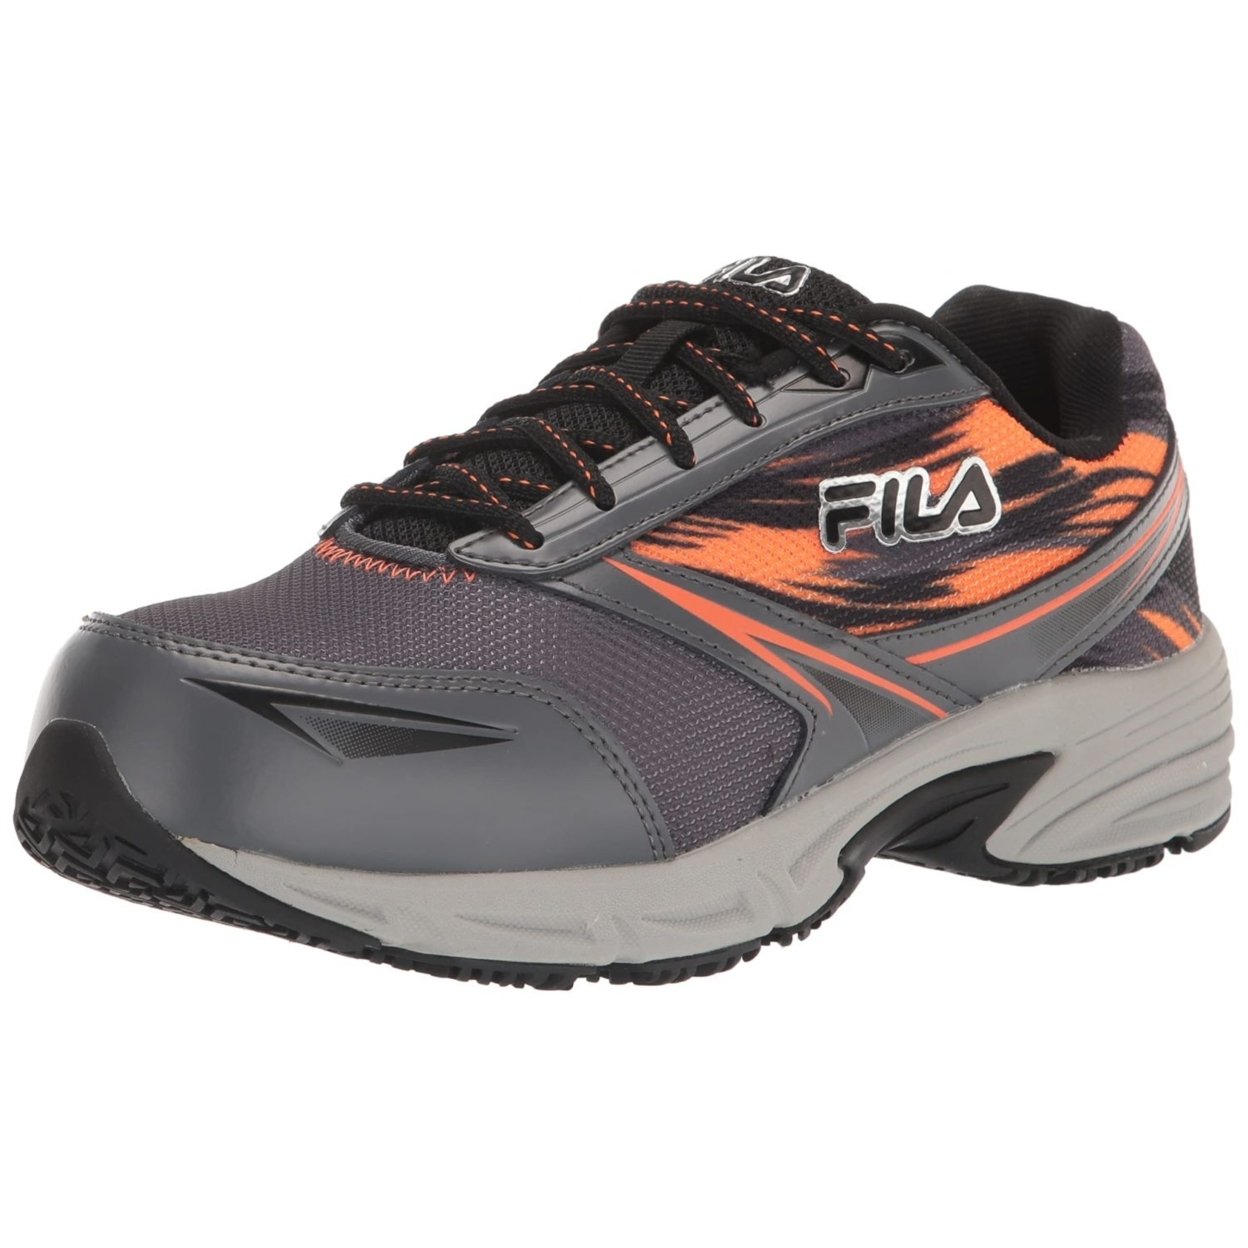 Fila Menâs Memory Meiera 2 Slip Resistant And Composite Toe Work Shoe CSRK/BLK/VORN - Castlerock/Black/Vibrant Orange, 11